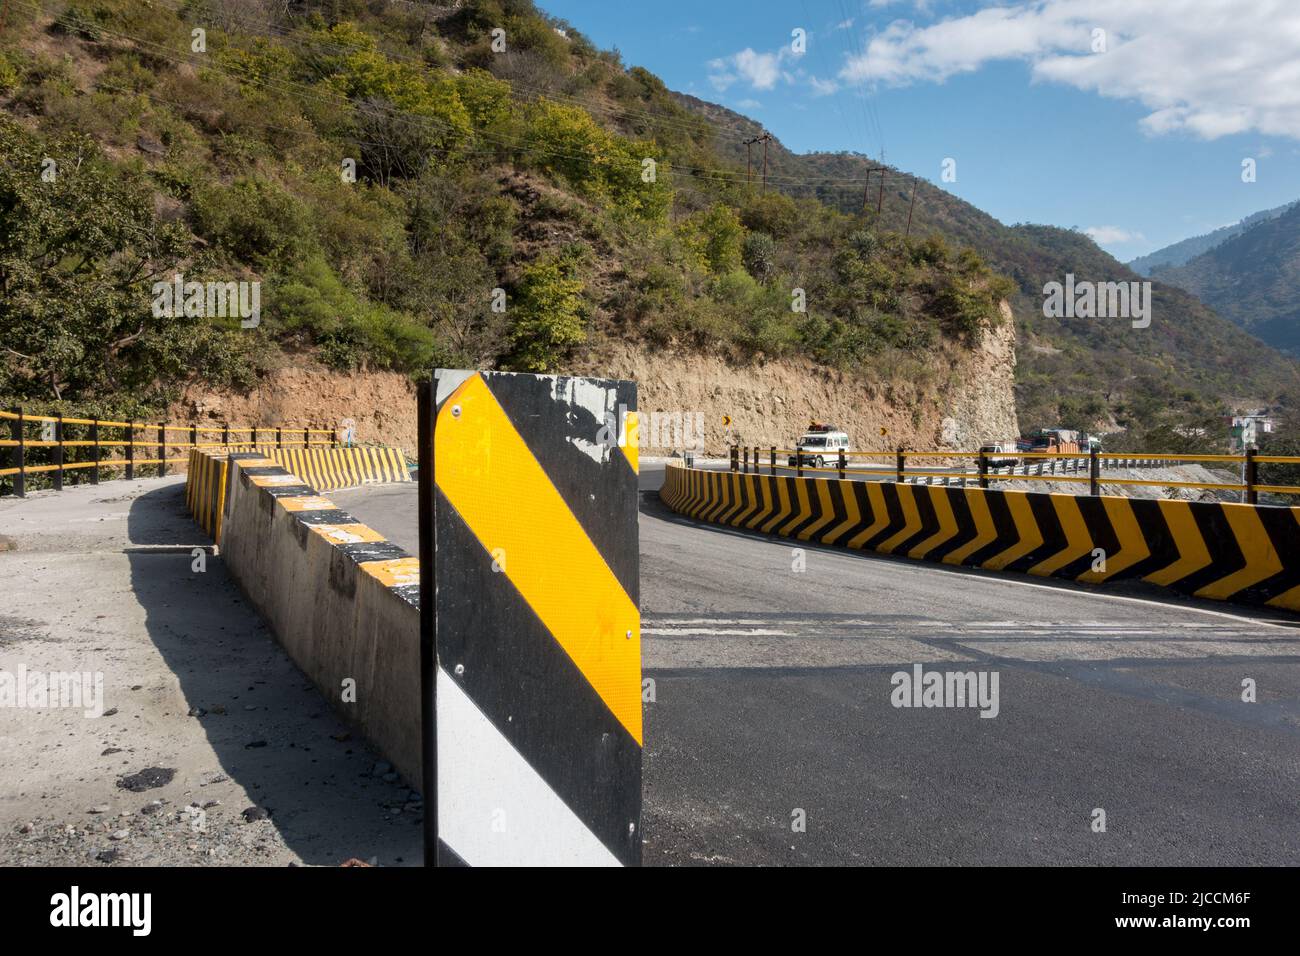 Un ampio angolo di una strada asfaltata per tutte le stagioni con barriere in calcestruzzo gialle. Uttarakhand, India. Foto Stock